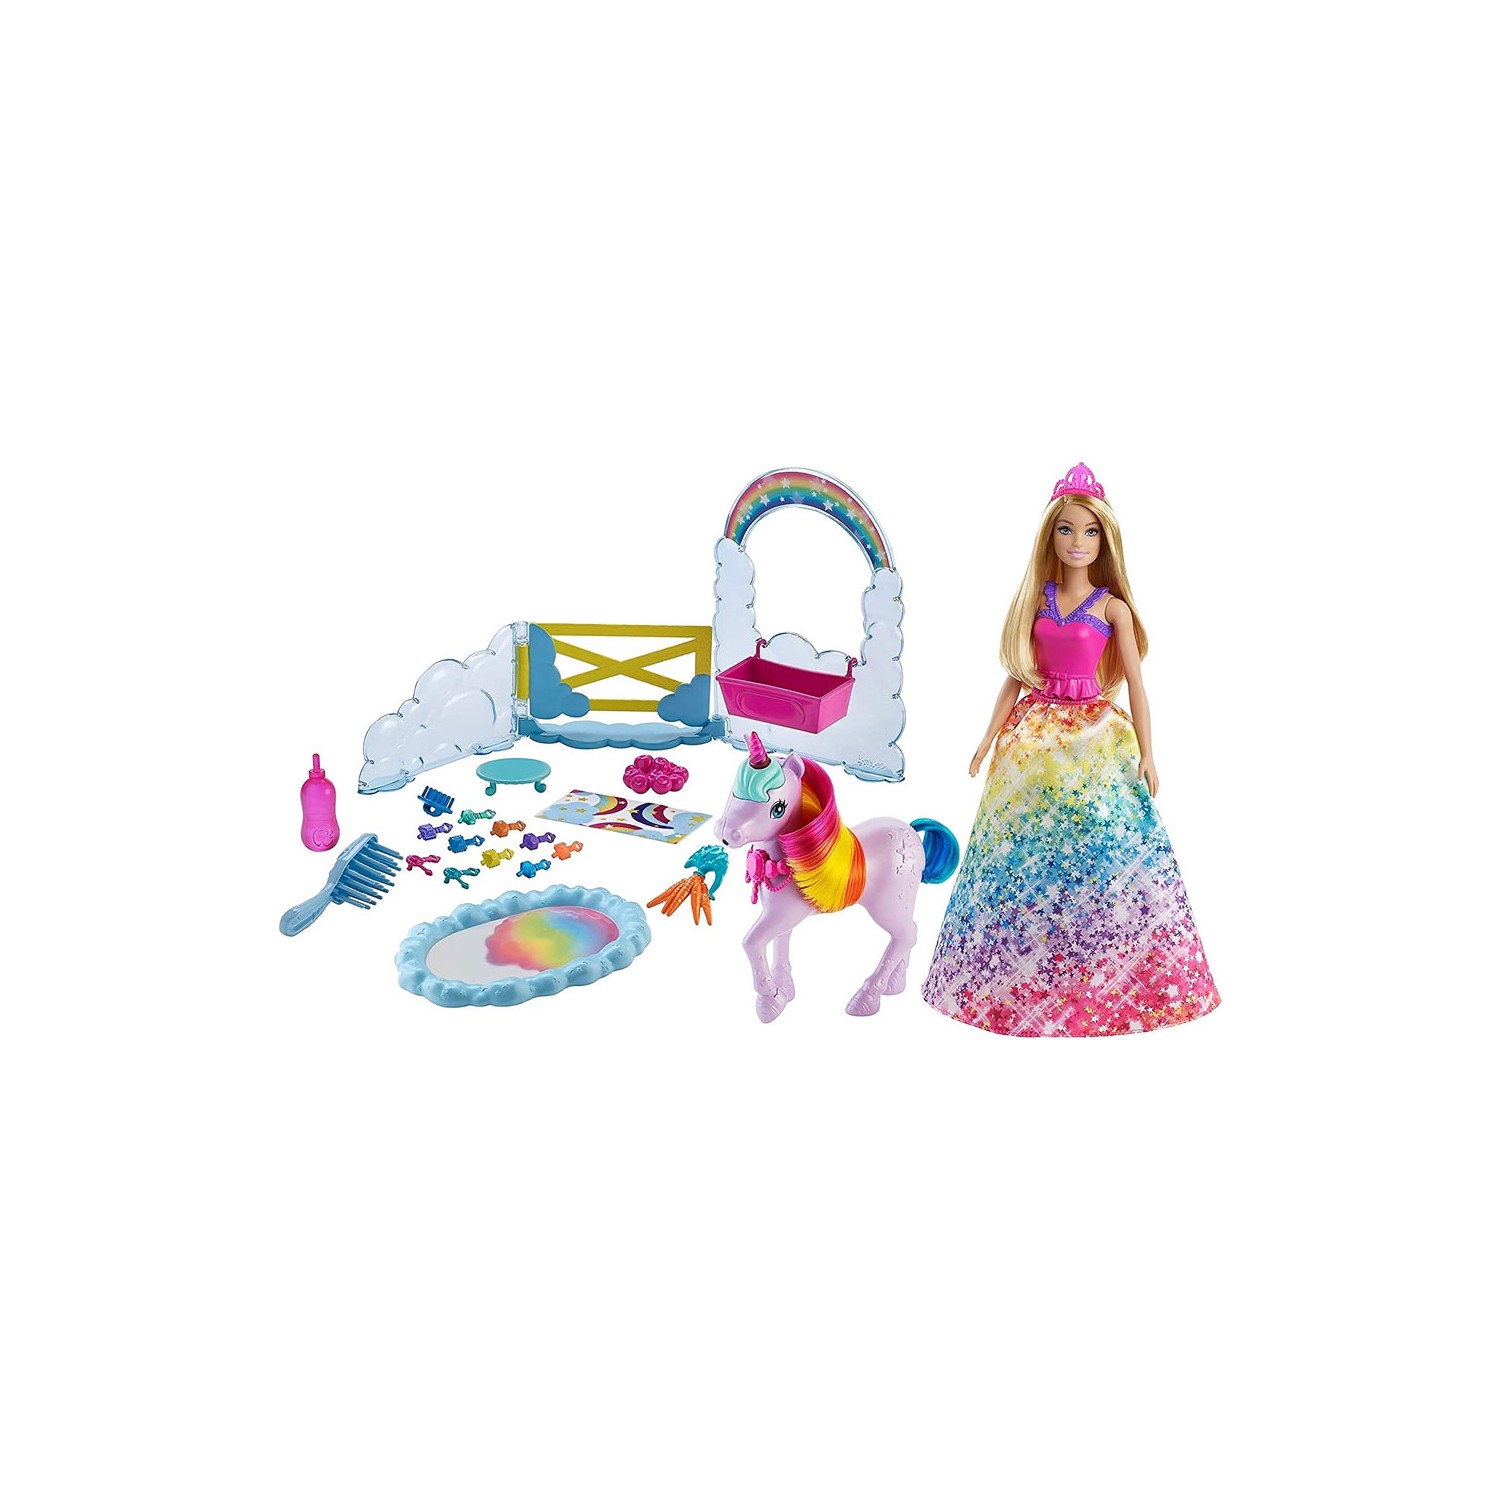 Кукла Barbie Dreamtopia и единорог кукла barbie русалка dreamtopia ggc09